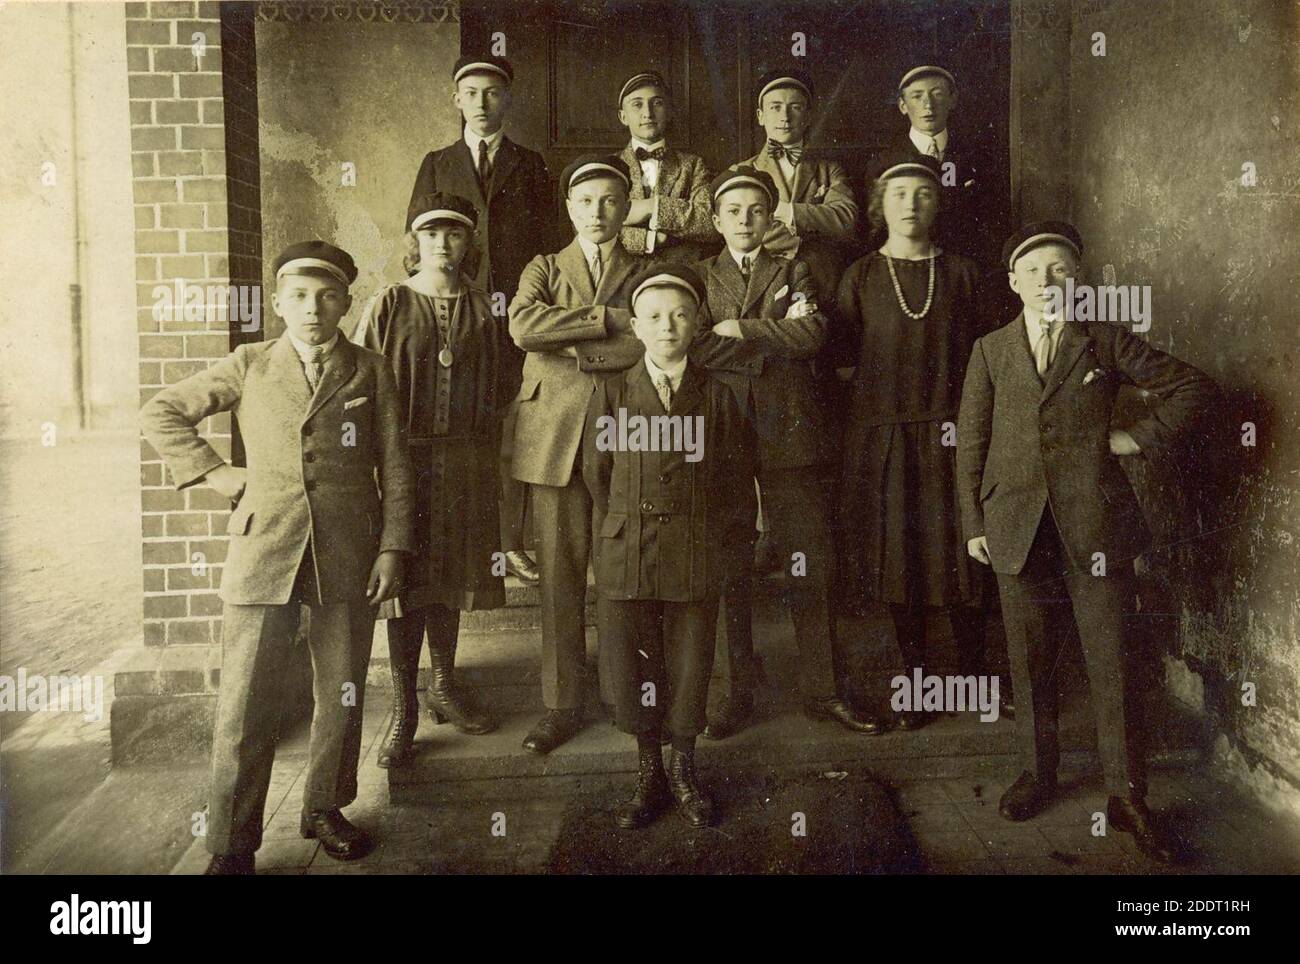 Klassenfotoeiner hessischen Oberschule 1920er Jahre. Stock Photo